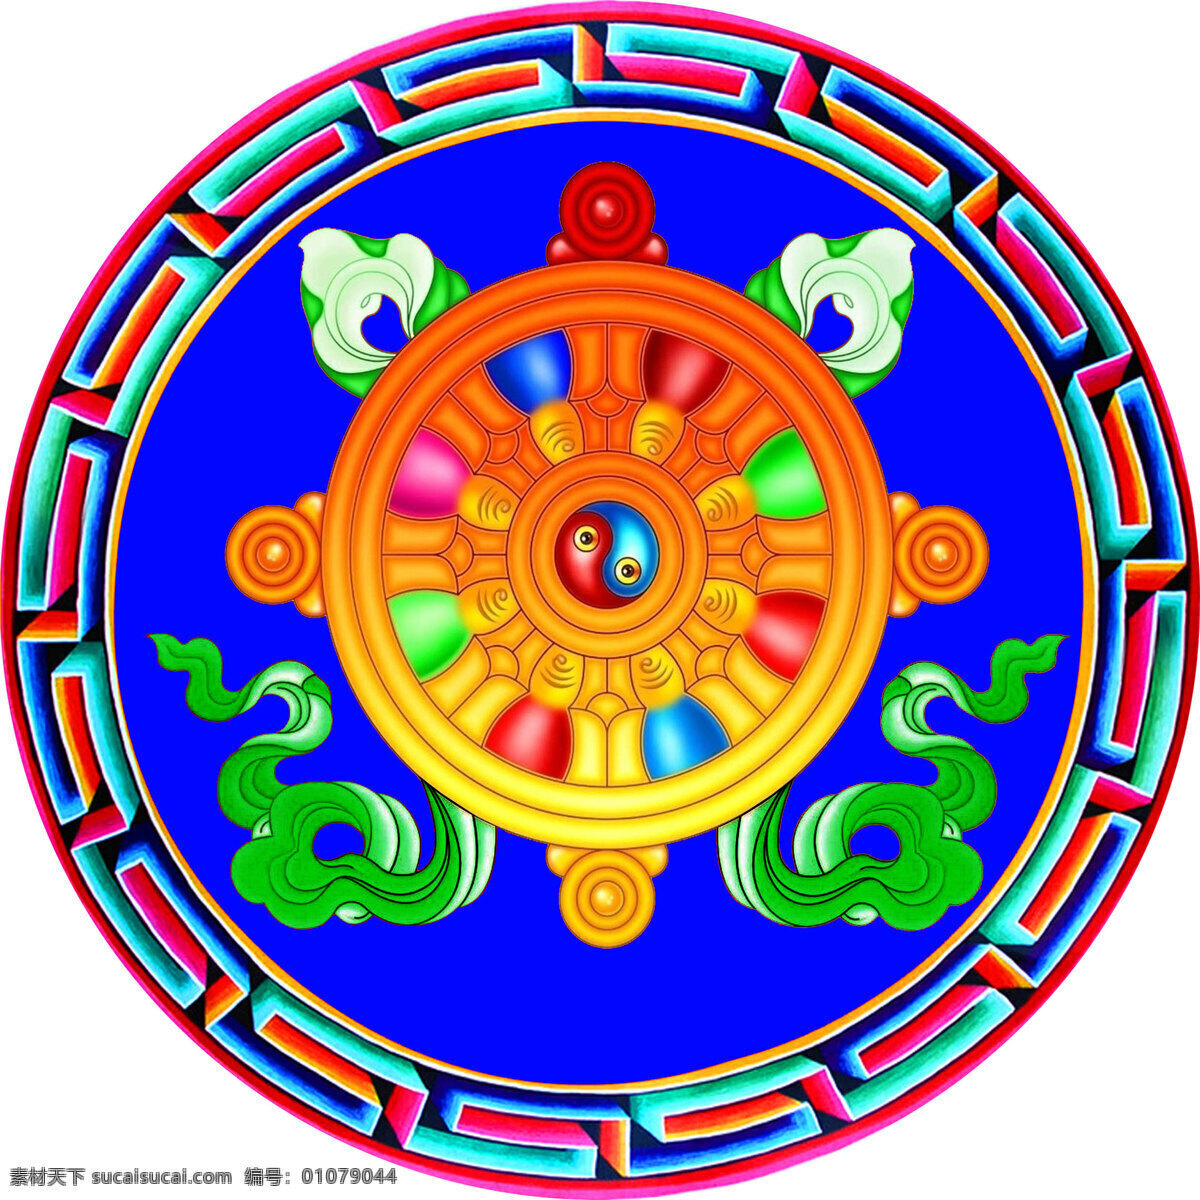 八宝 花边 吉祥八宝 图案 文化艺术 西藏 宗教信仰 八宝设计素材 八宝模板下载 藏八宝 金轮